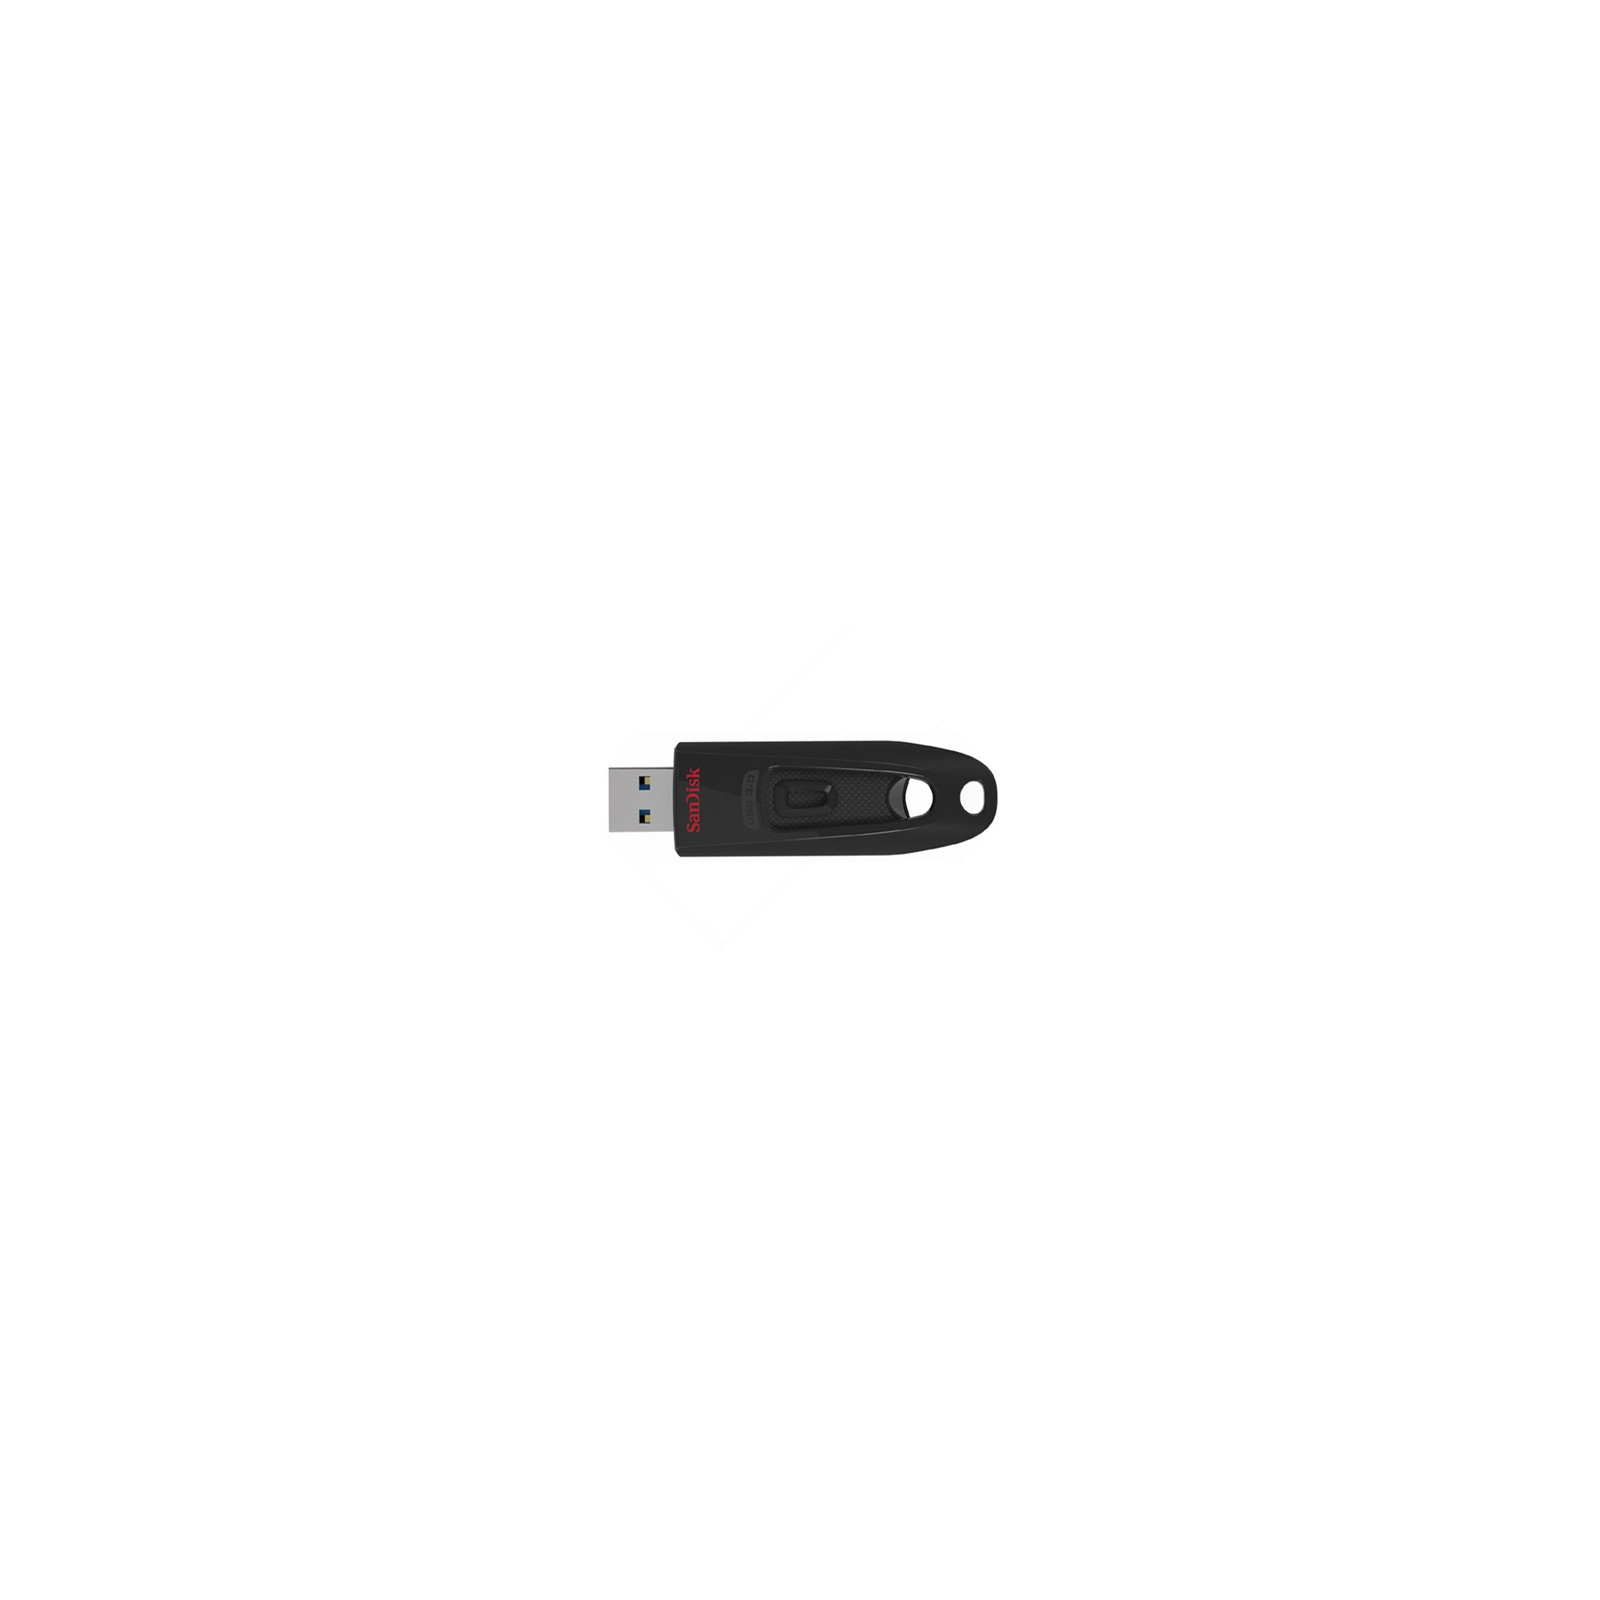 USB флеш накопичувач SanDisk 32Gb Ultra USB 3.0 (SDCZ48-032G-U46)